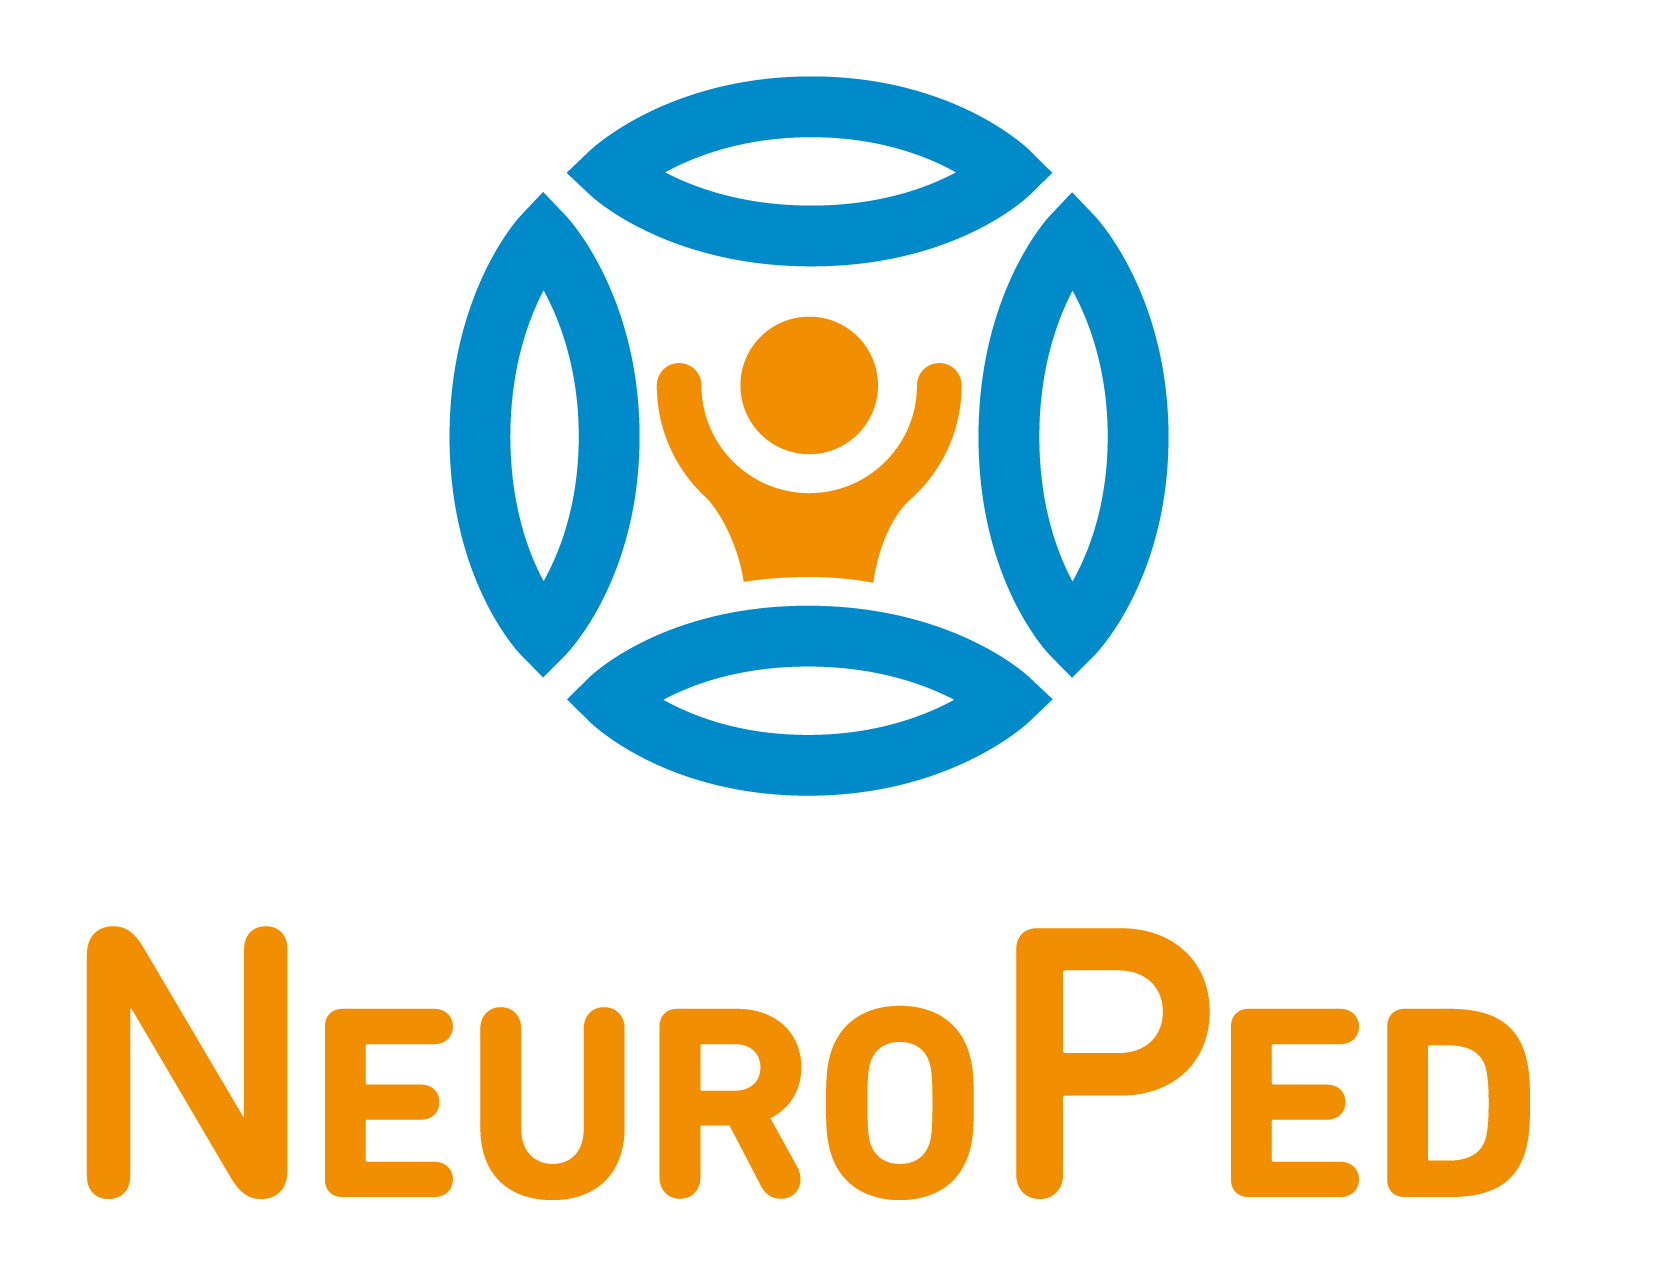 Neuroped